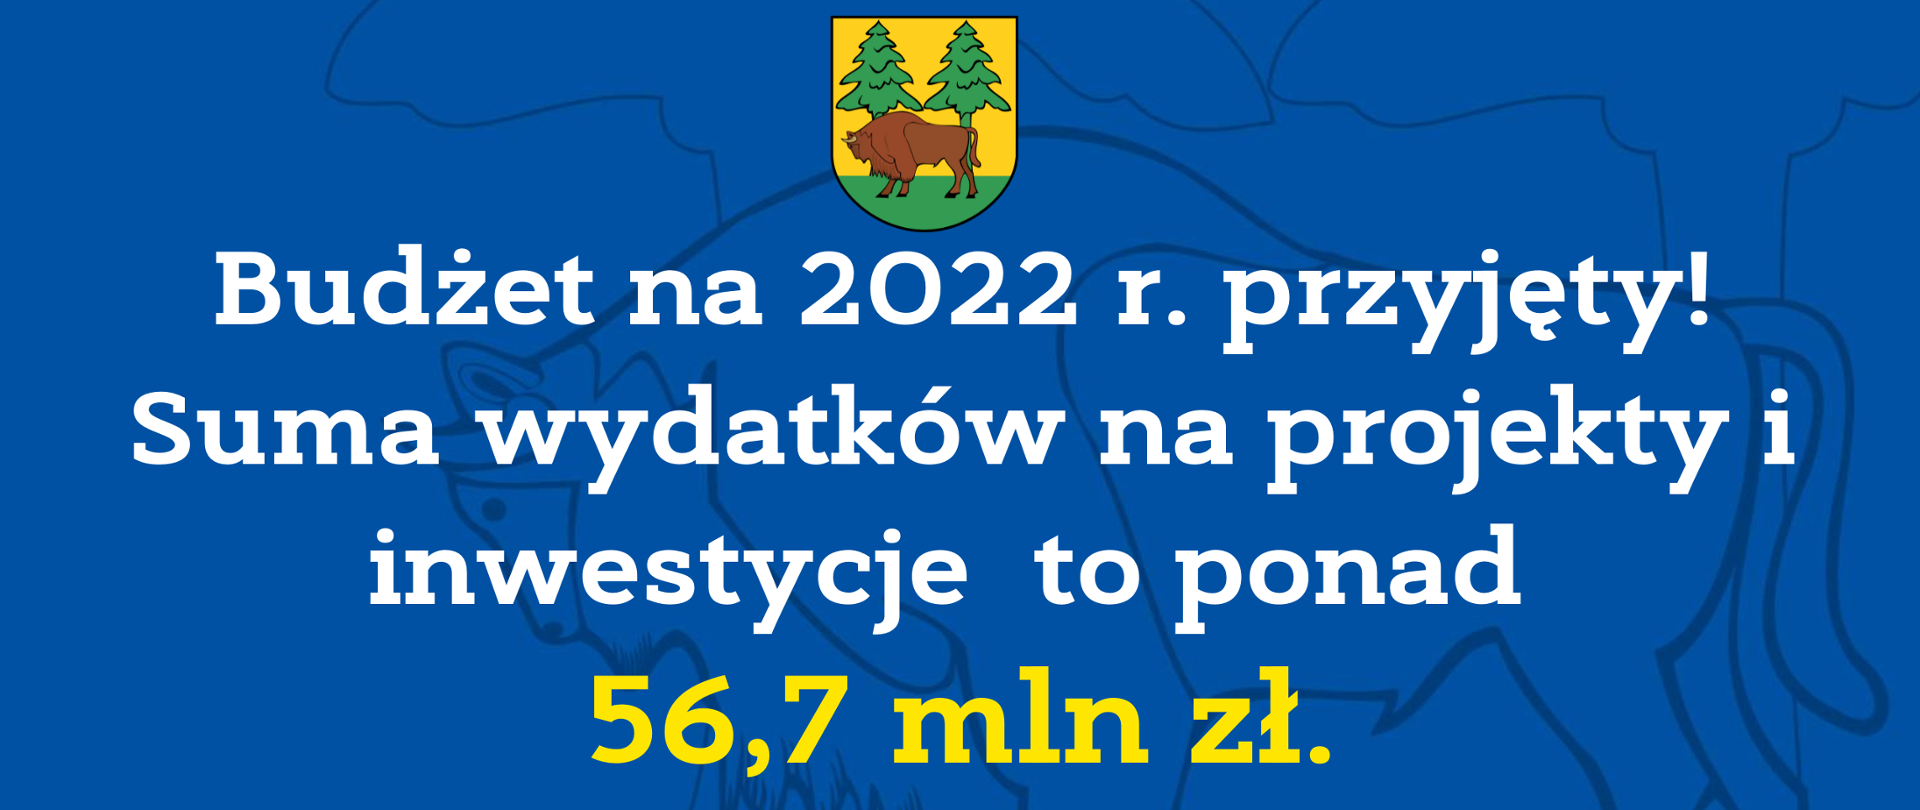 Budżet na 2022 r. przyjęty! Suma wydatków na projekty i inwestycje to ponad 56,7 mln zł.